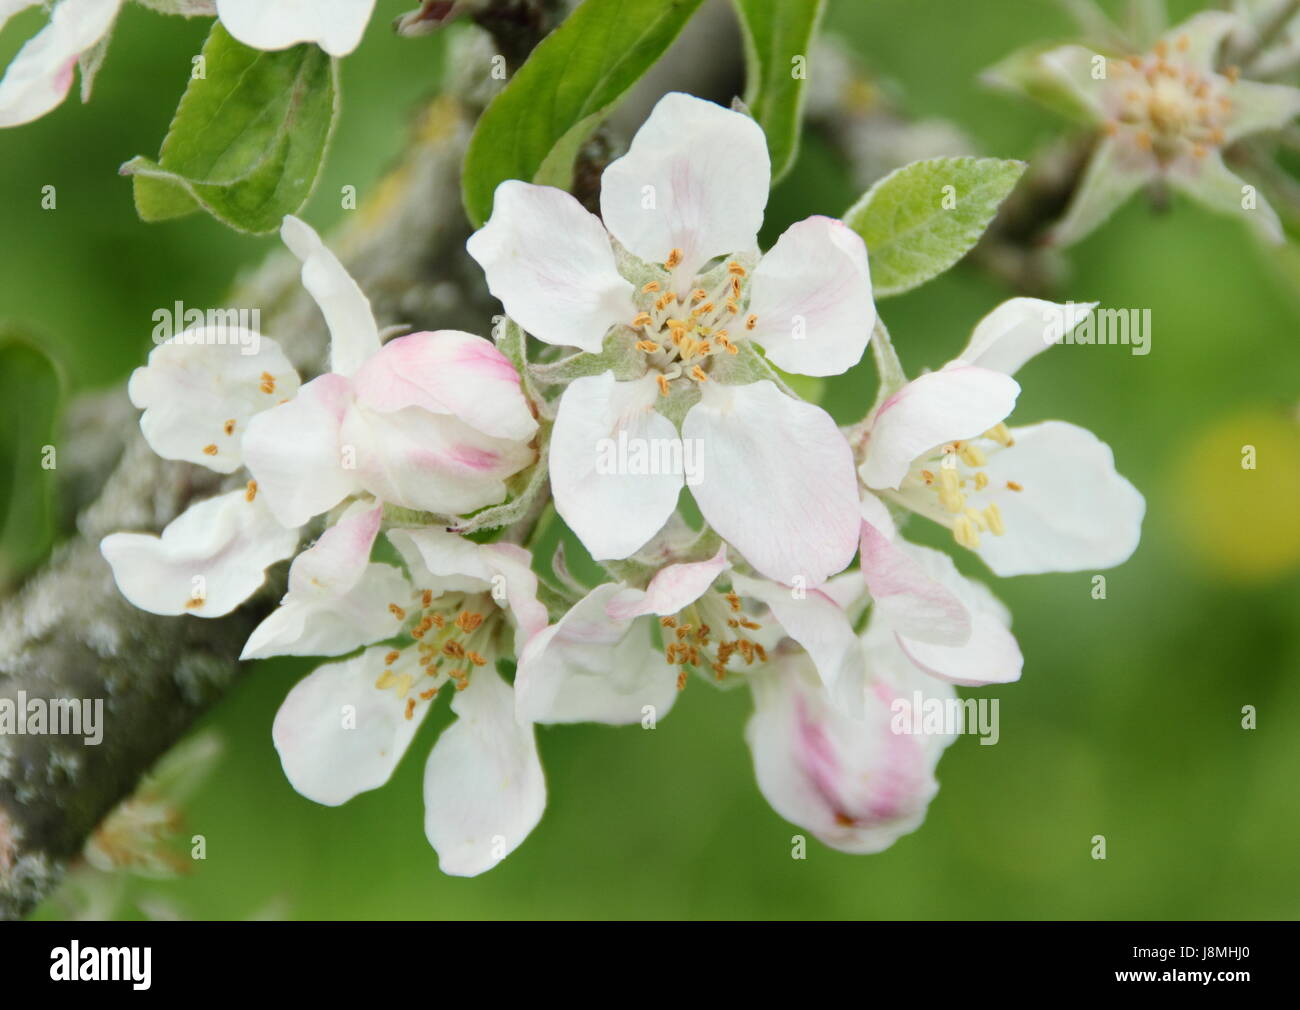 Malus domestica ' Devonshire Quarrenden' Apple tree florecen en plena floración en un huerto de English Heritage en un soleado día de primavera, REINO UNIDO - Mayo Foto de stock